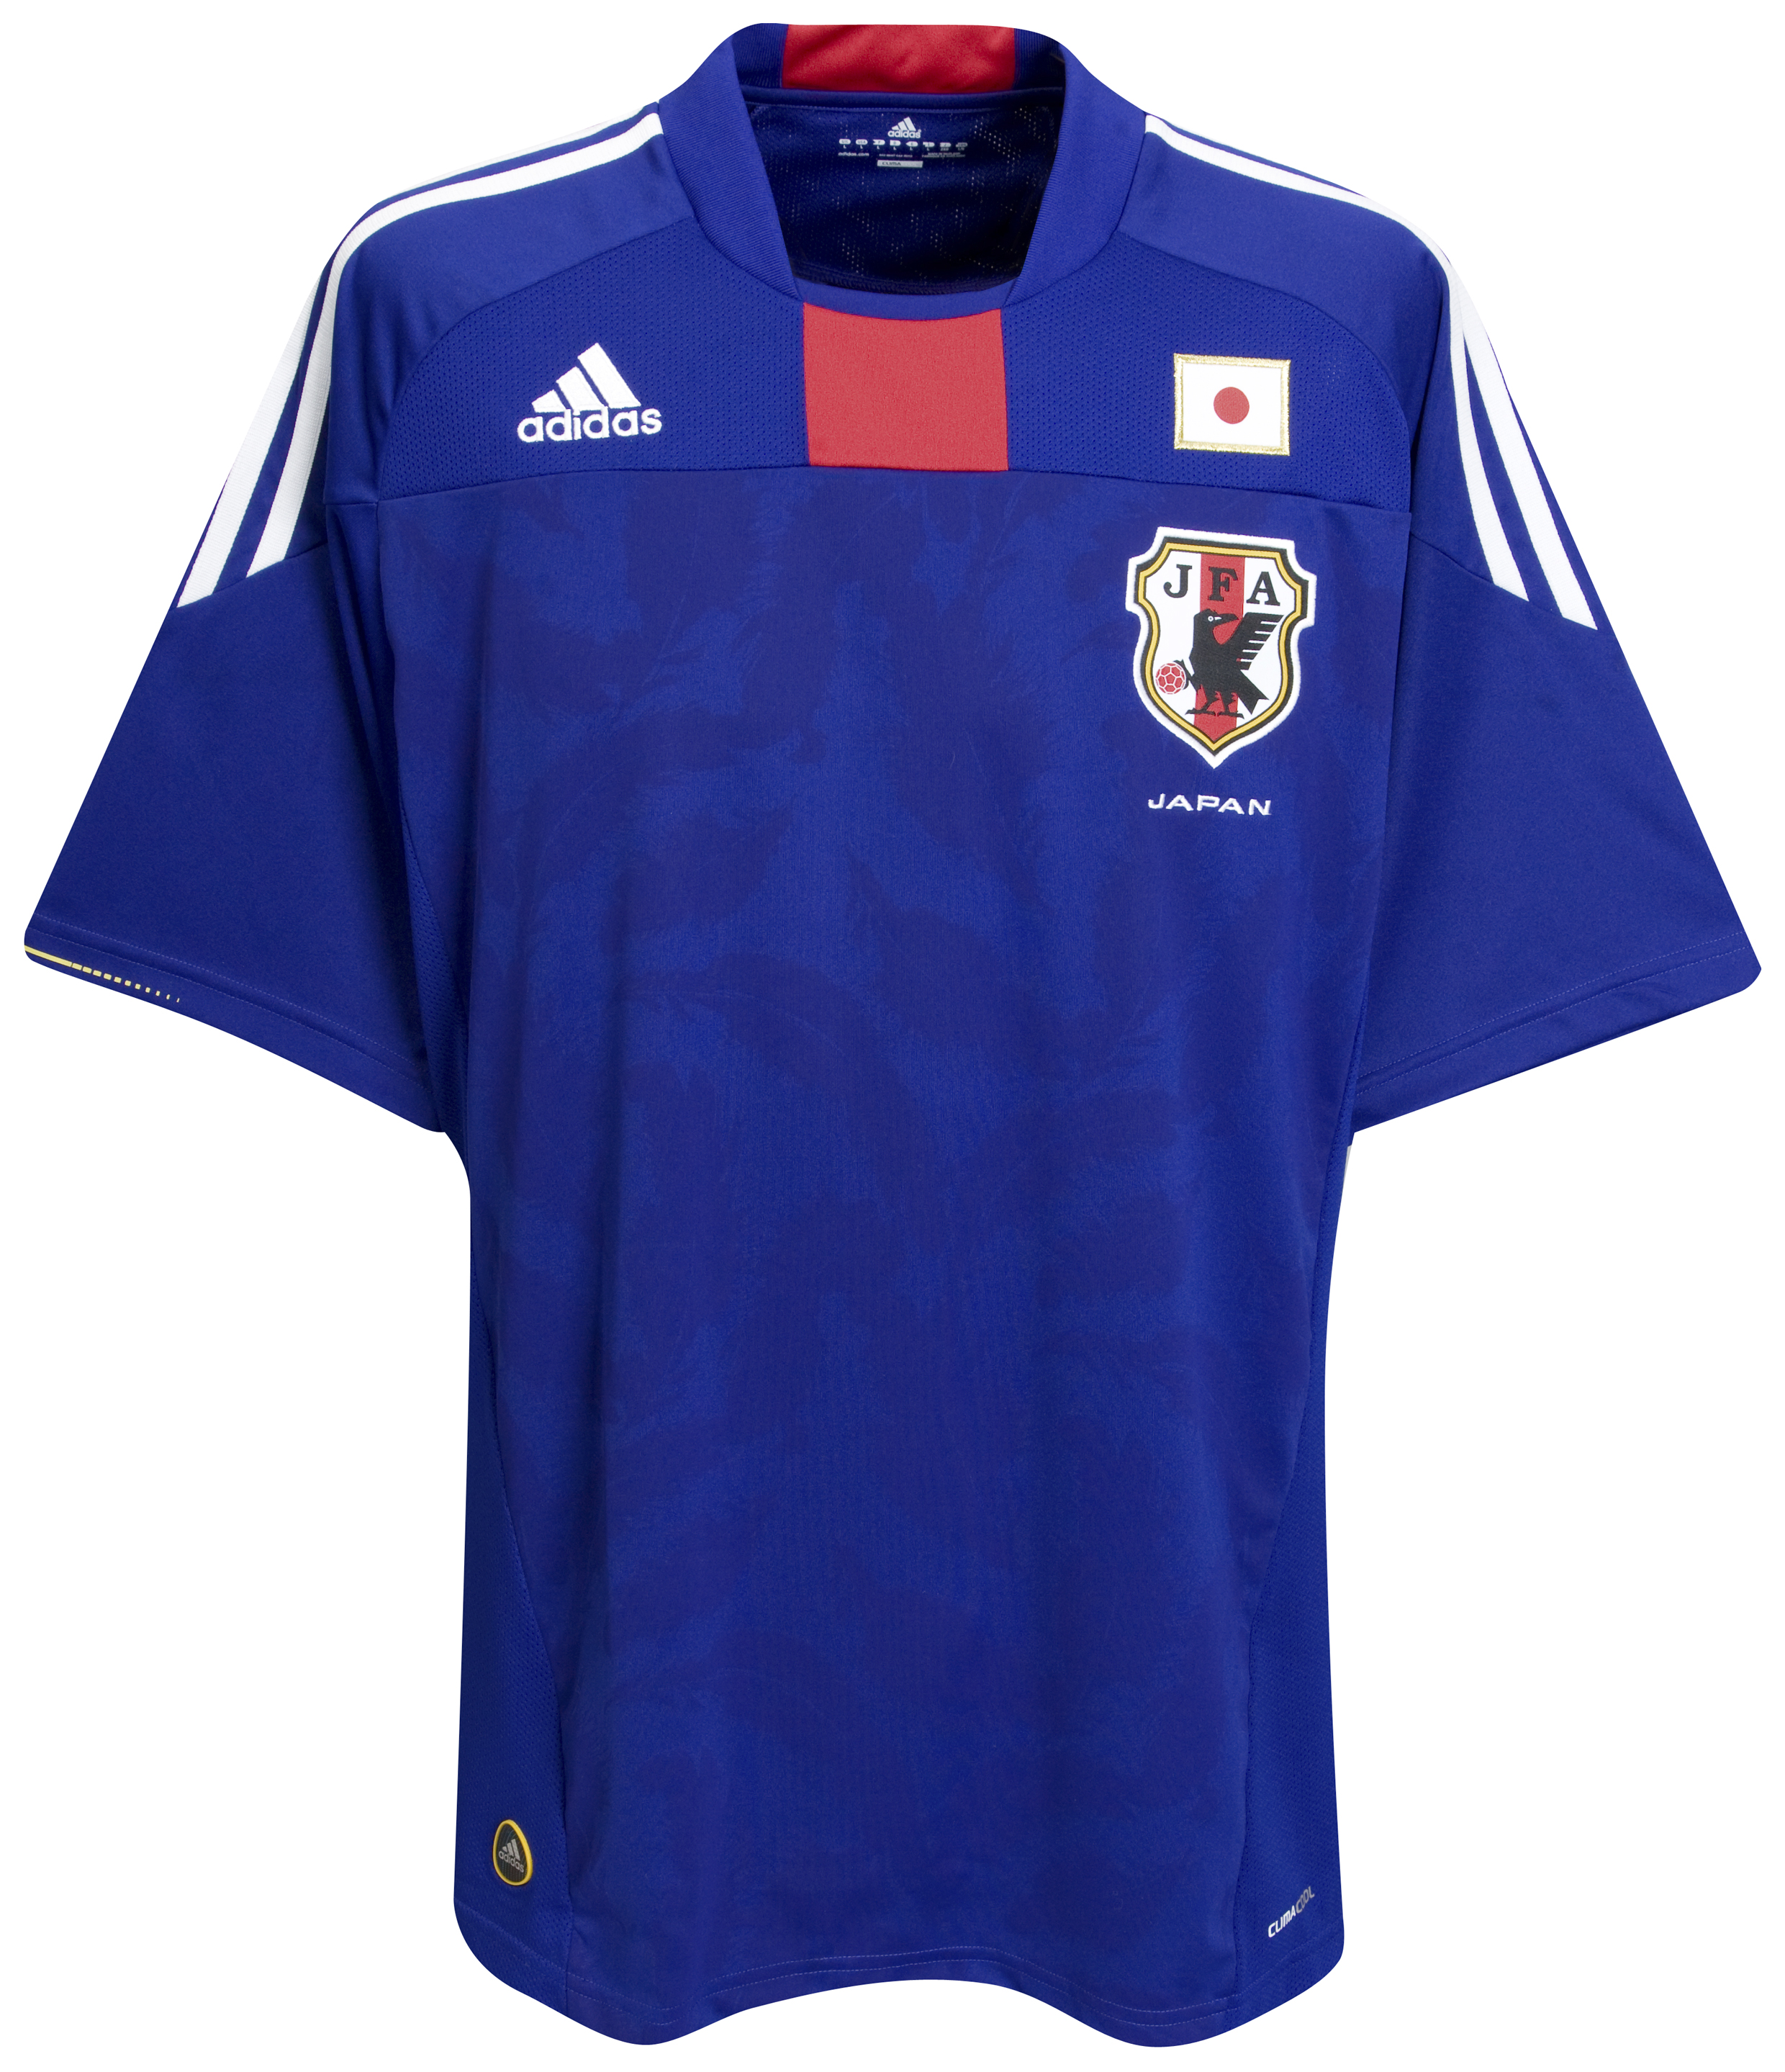 .¸-(_ (قمصان جميع المنتخبات لكأس العالم 2010) _)-,. Kb-63744